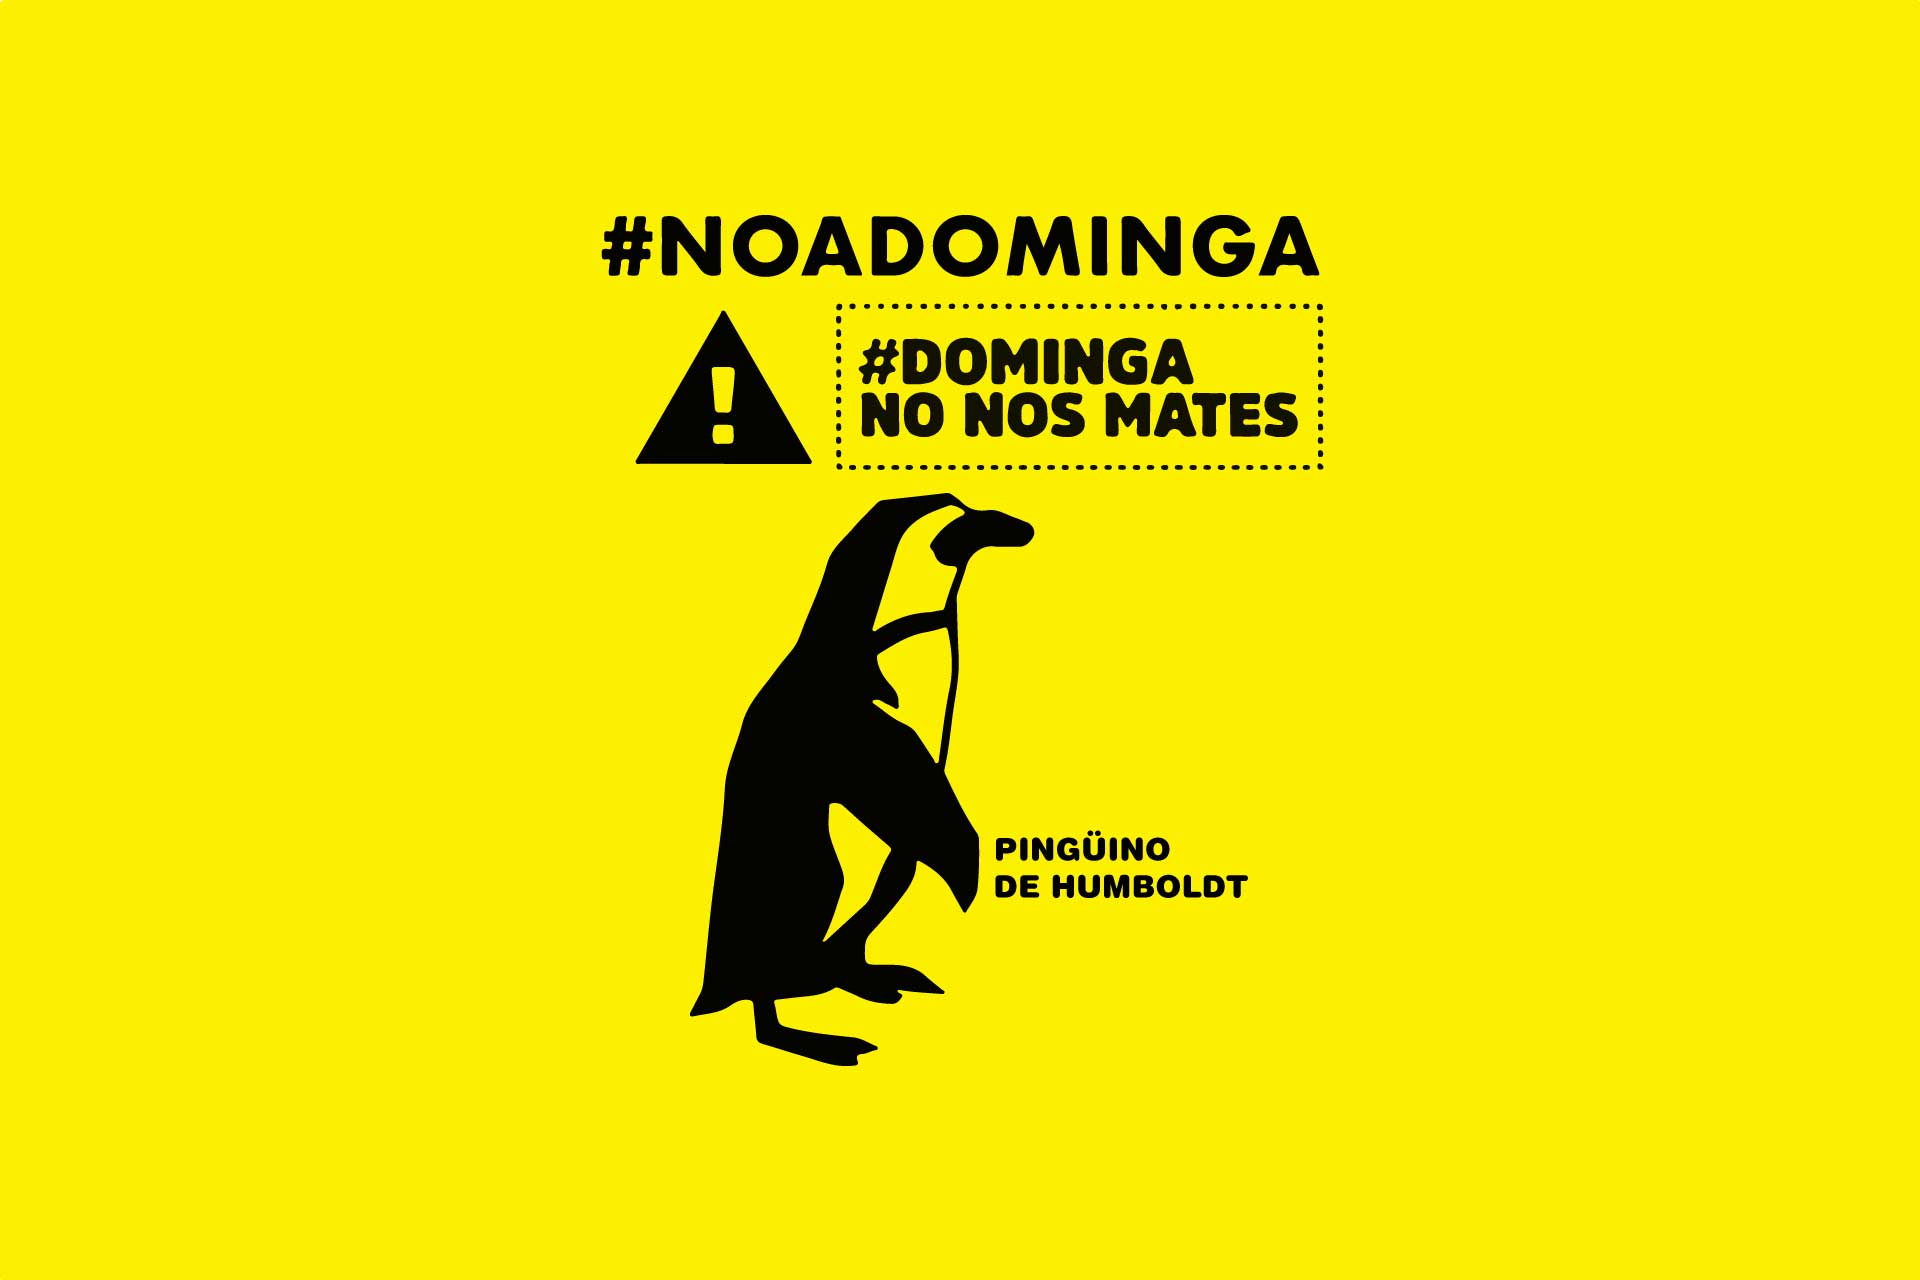 ¡NO A DOMINGA! EN IDMA DEFENDEMOS UNO DE LOS ECOSISTEMAS MÁS RICOS DEL MUNDO